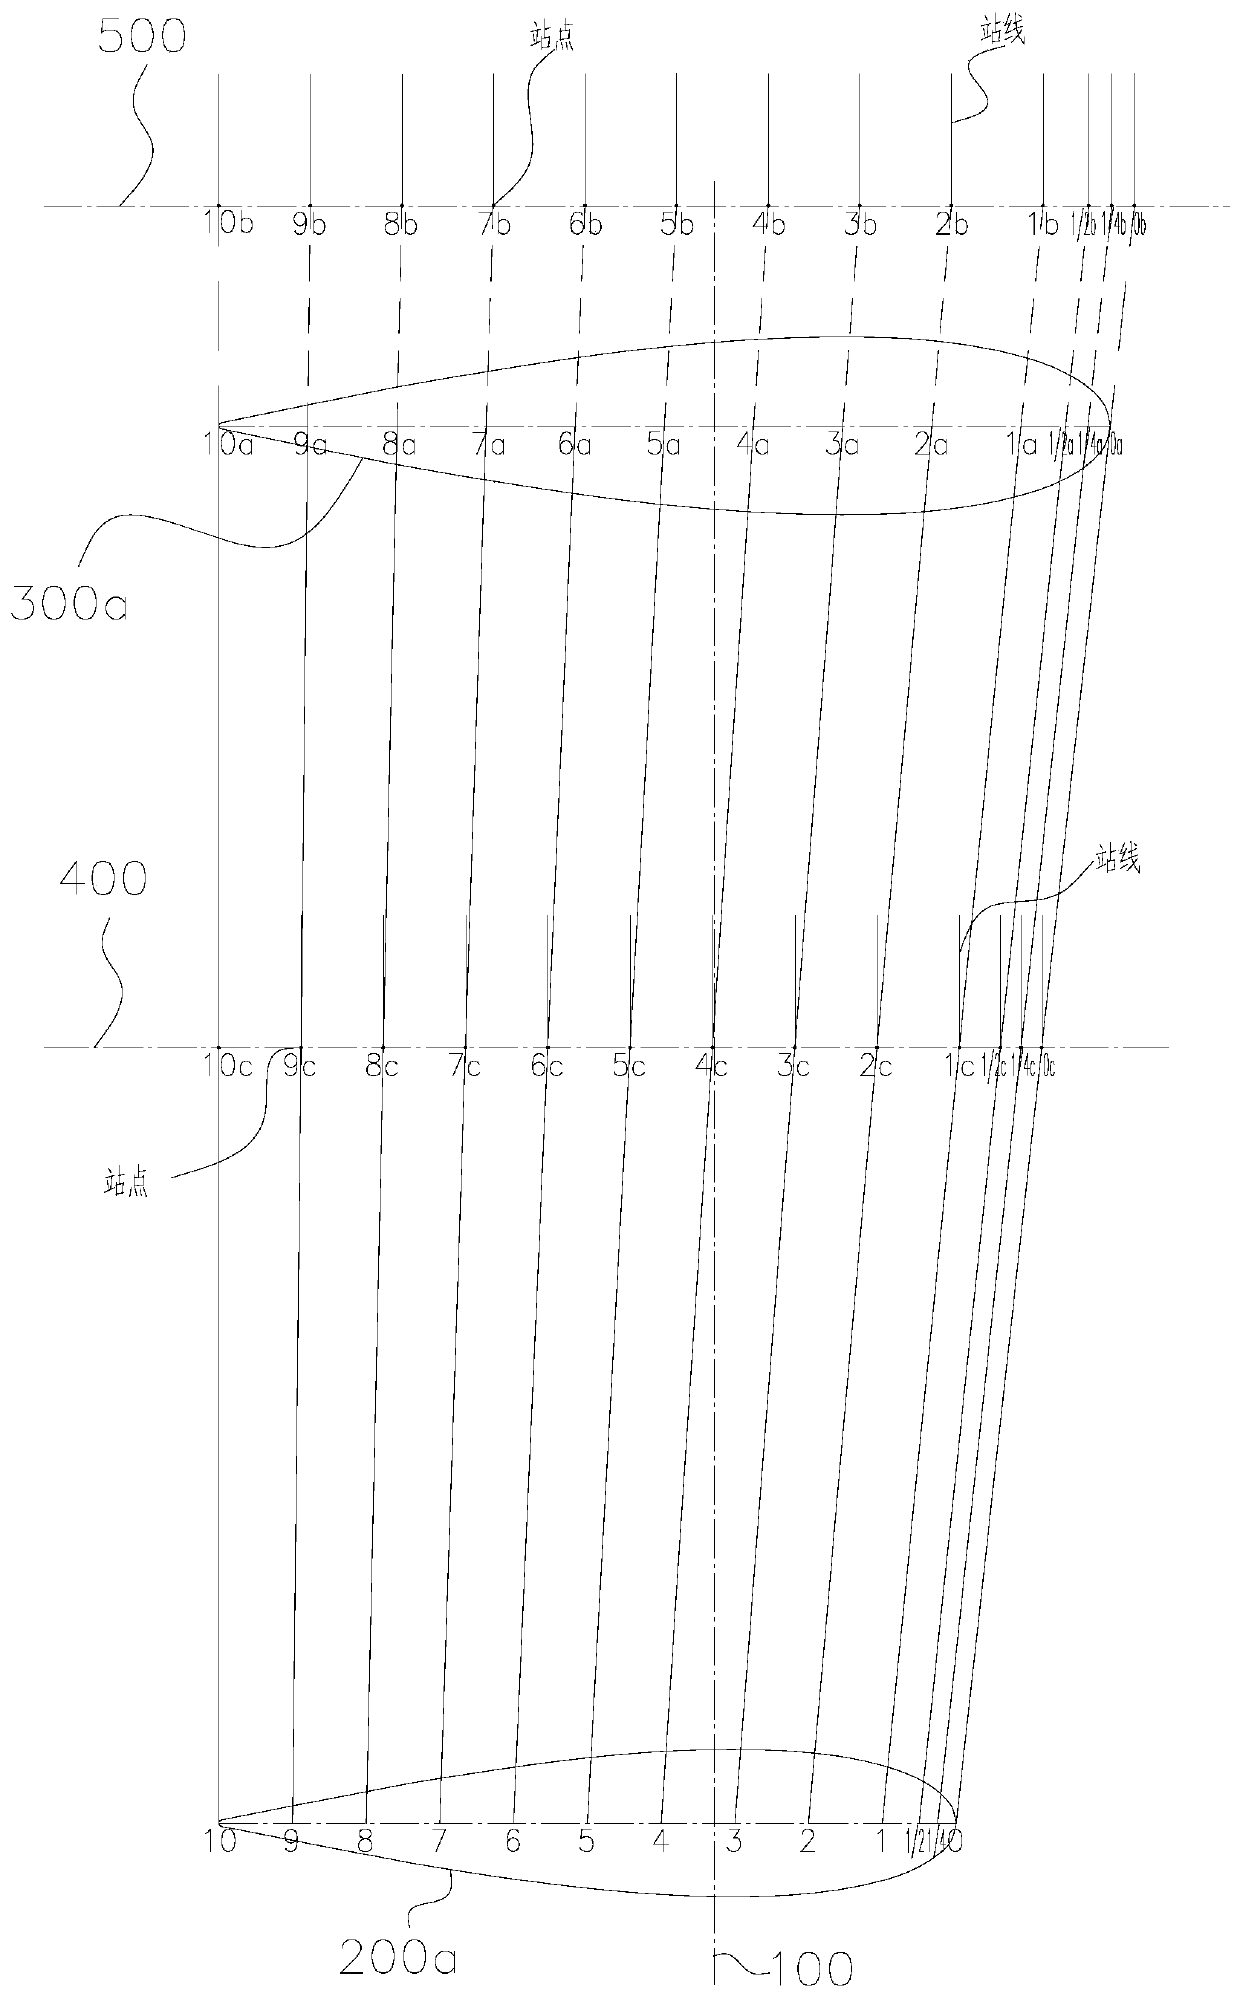 Method for designing large-scale marine rudder horn